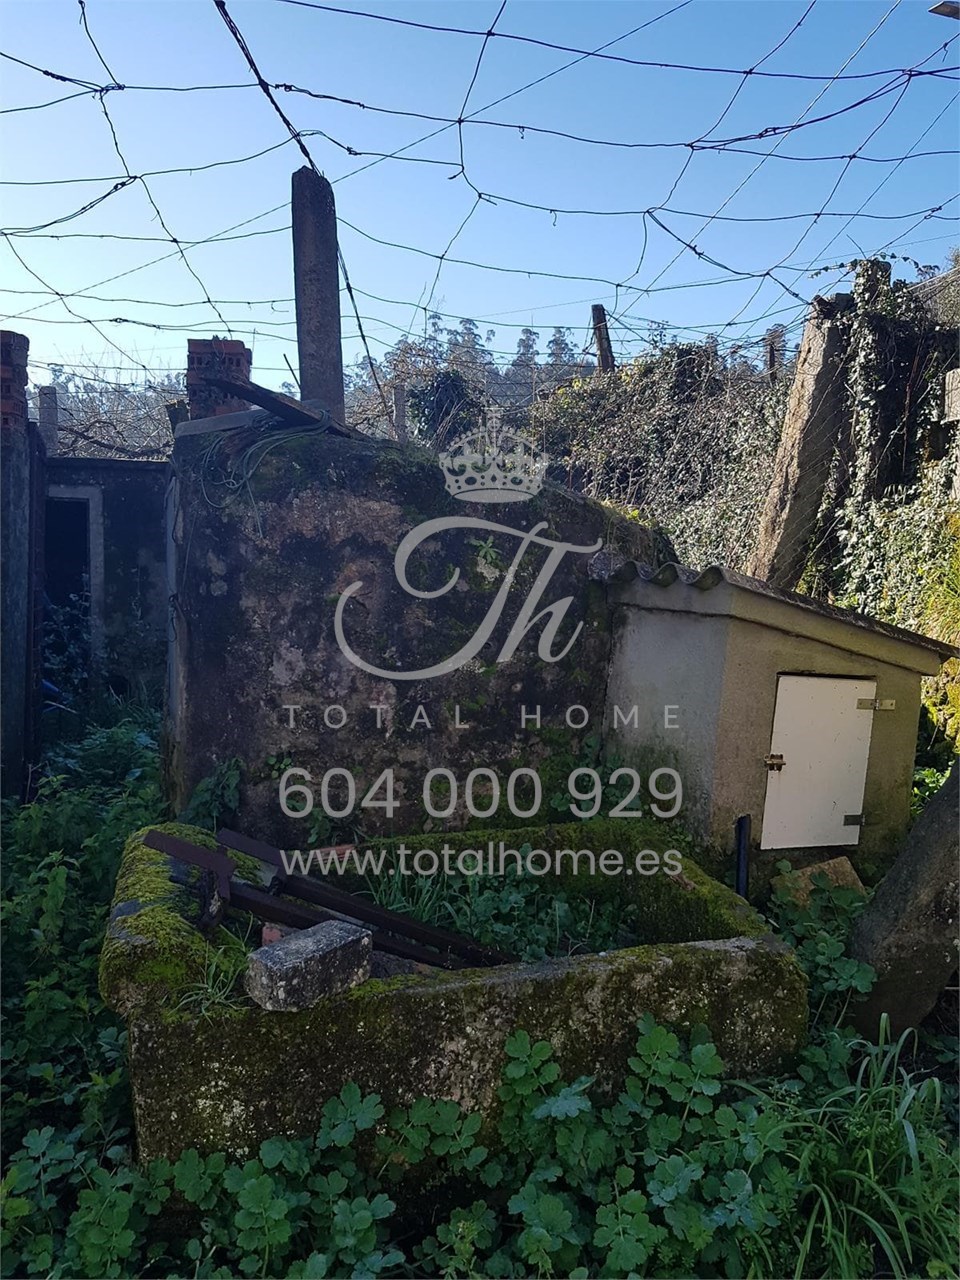 Foto 10 Total Home vende casa de piedra para restaurar